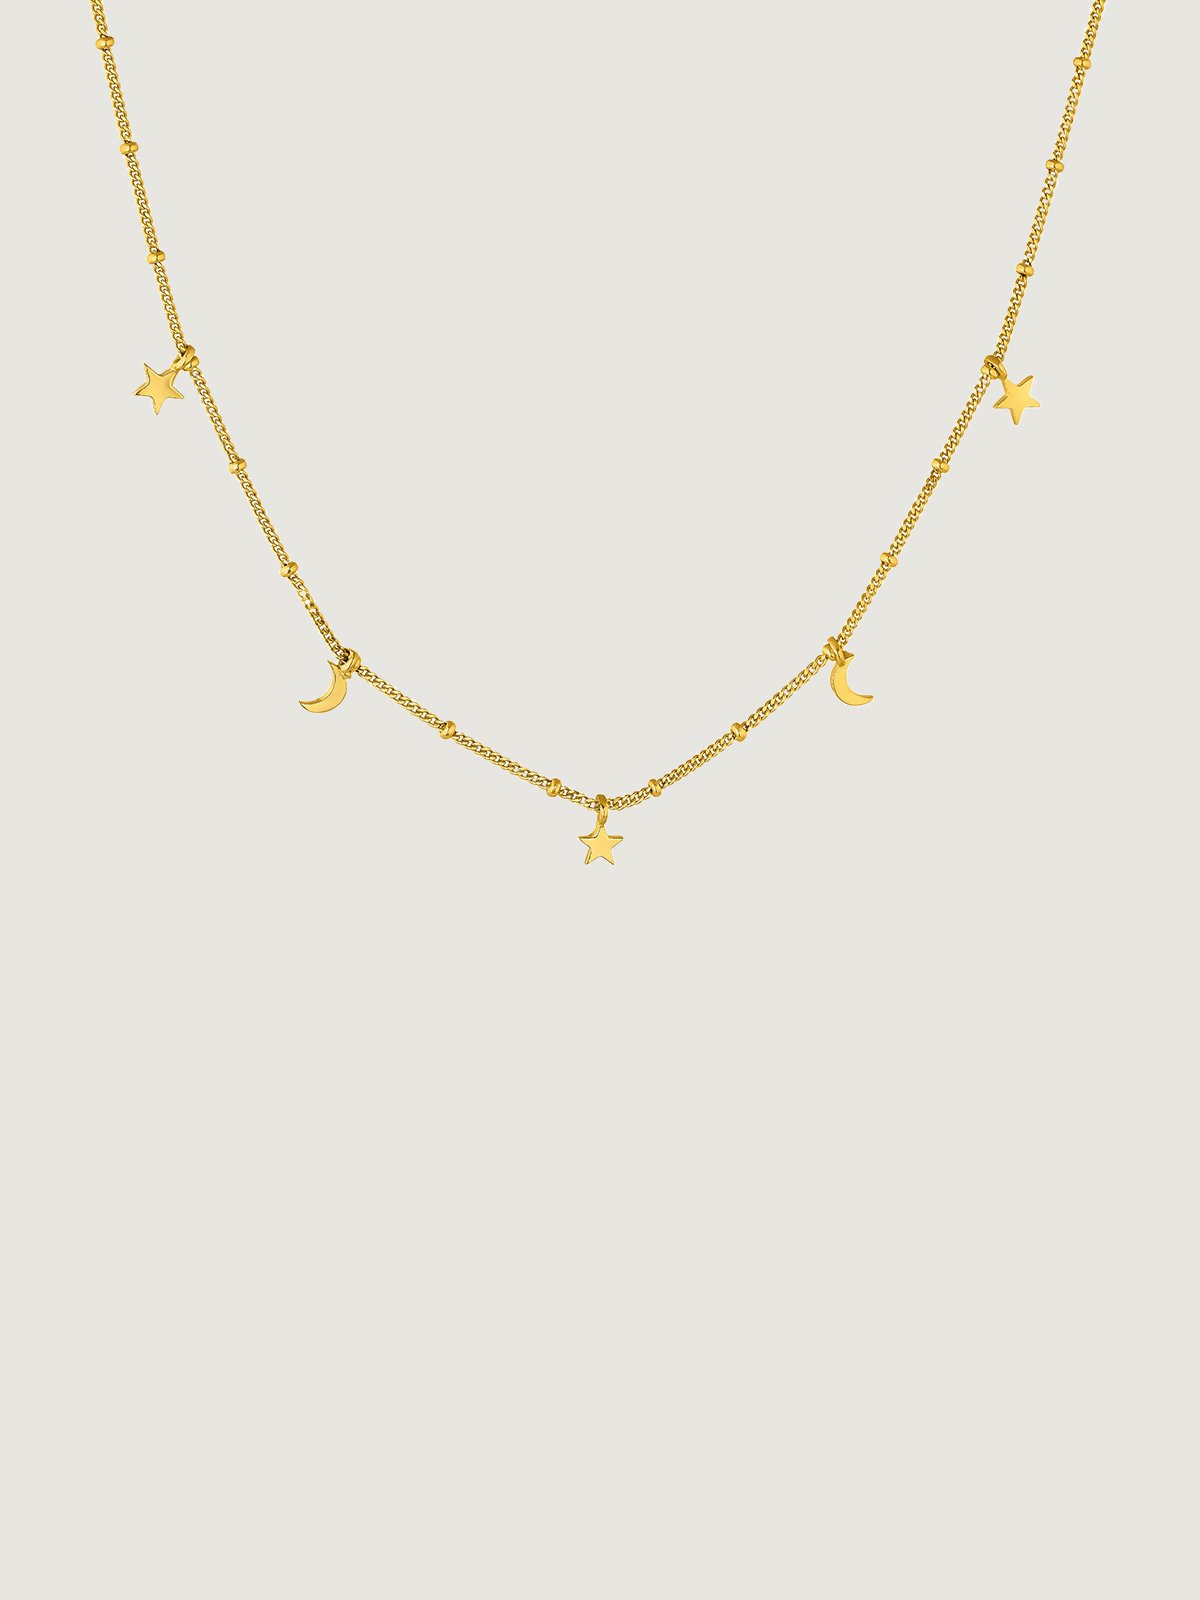 Collar de plata 925 bañada en oro amarillo de 18K con estrellas y lunas